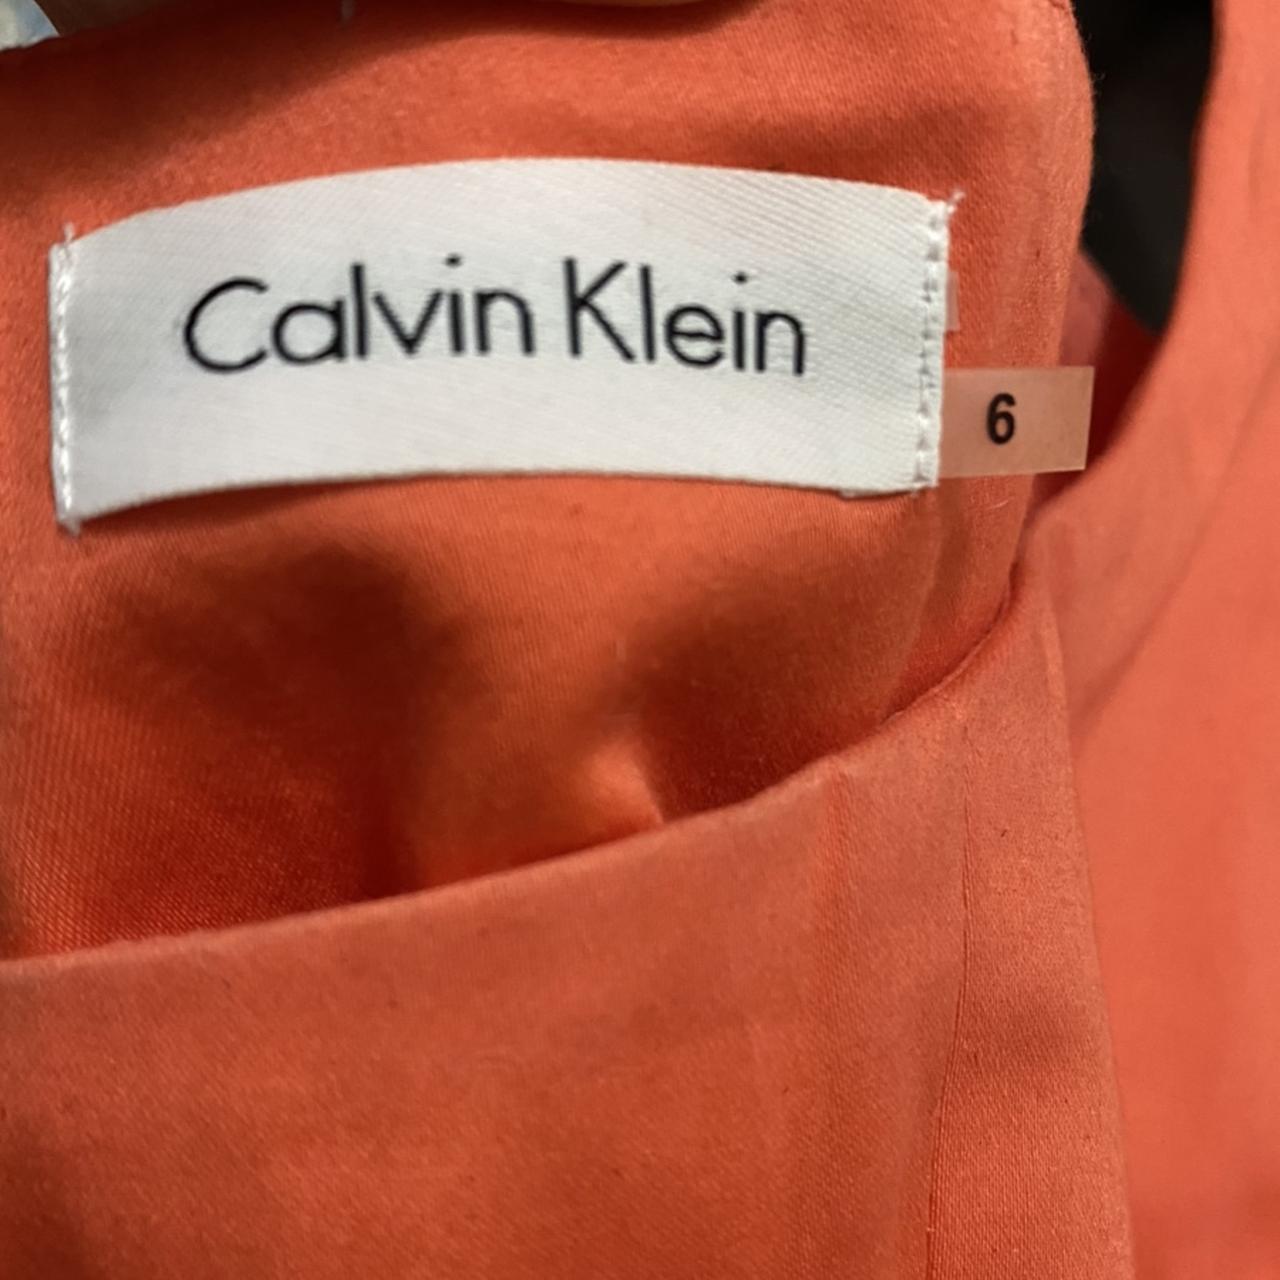 CALVIN KLEIN ORANGE SHEATH DRESS 📳 Square neckline... - Depop